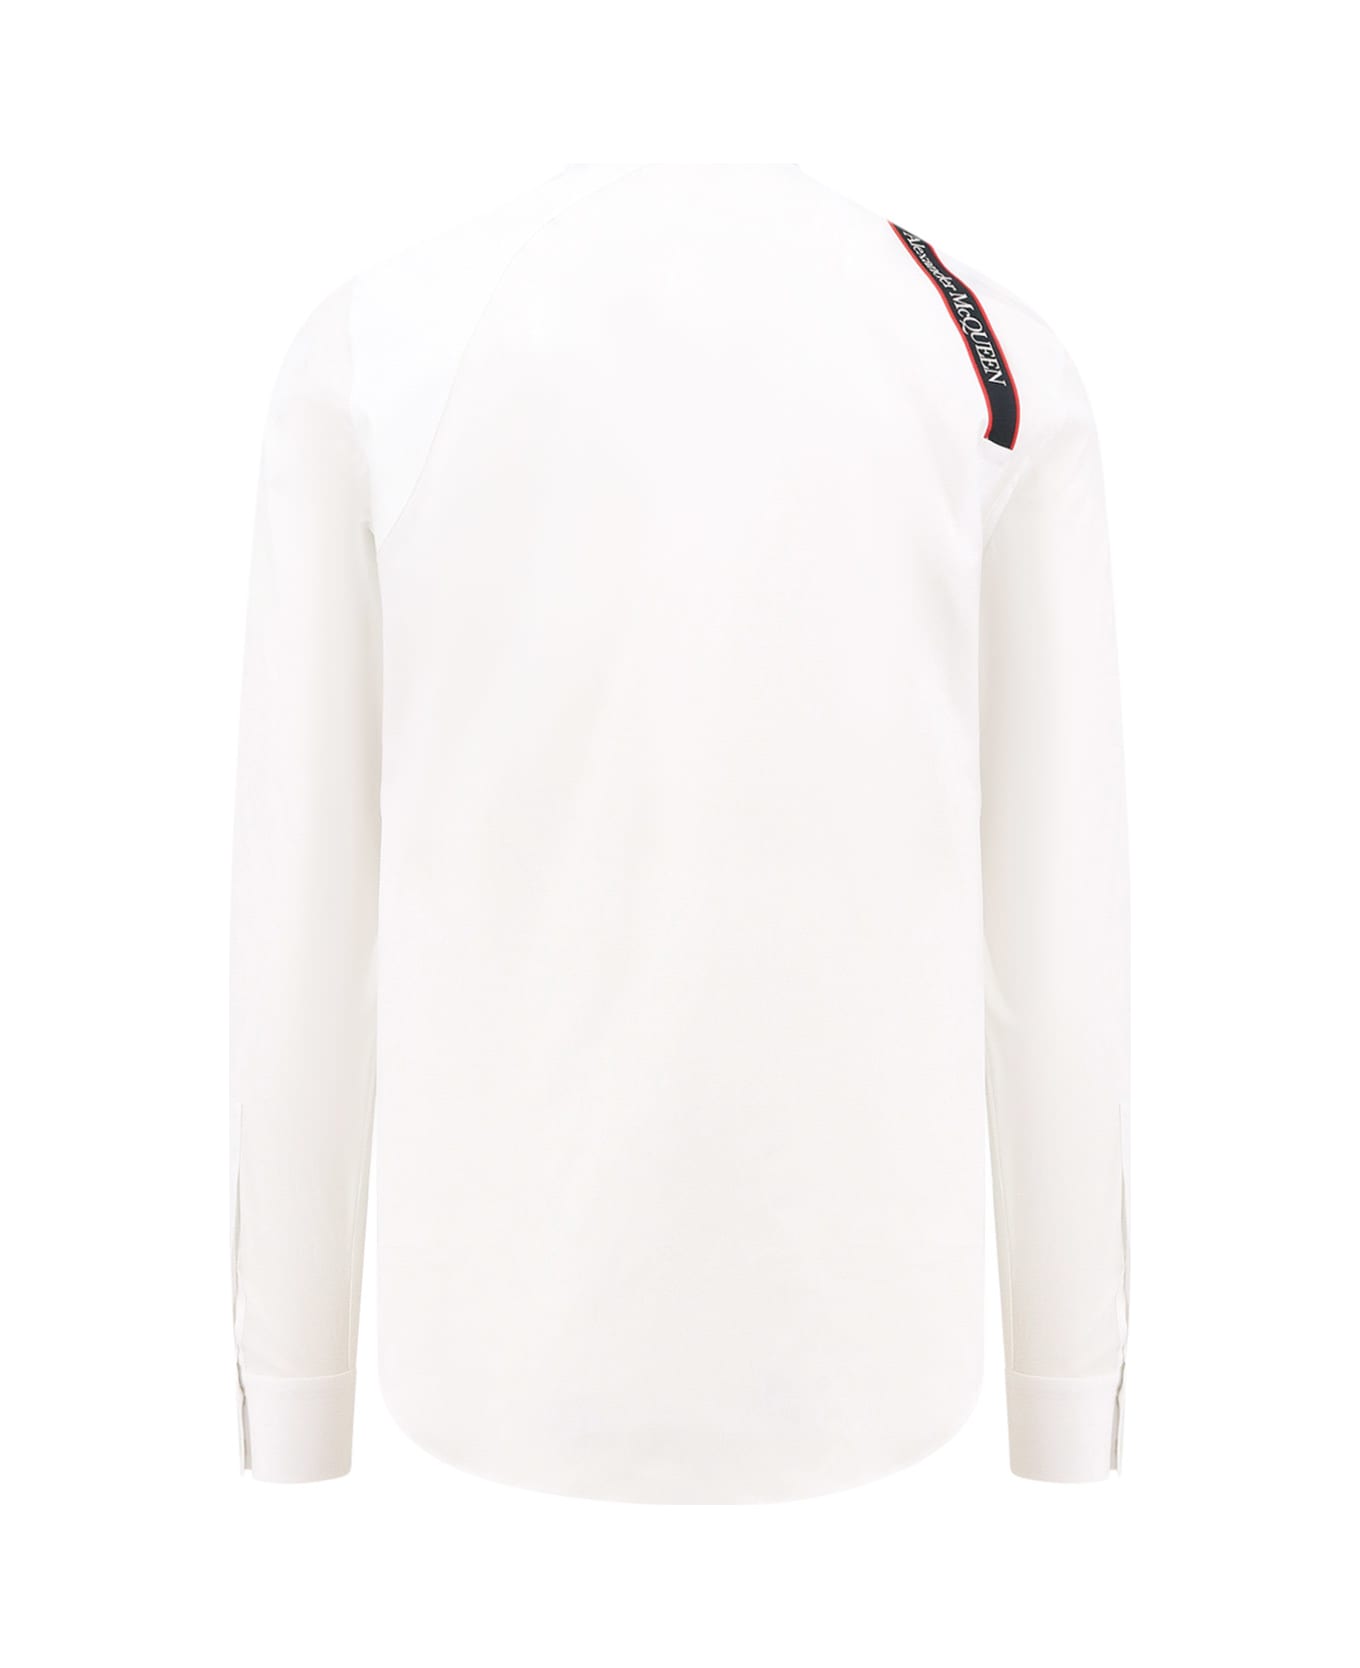 Alexander McQueen Harness Shirt - White